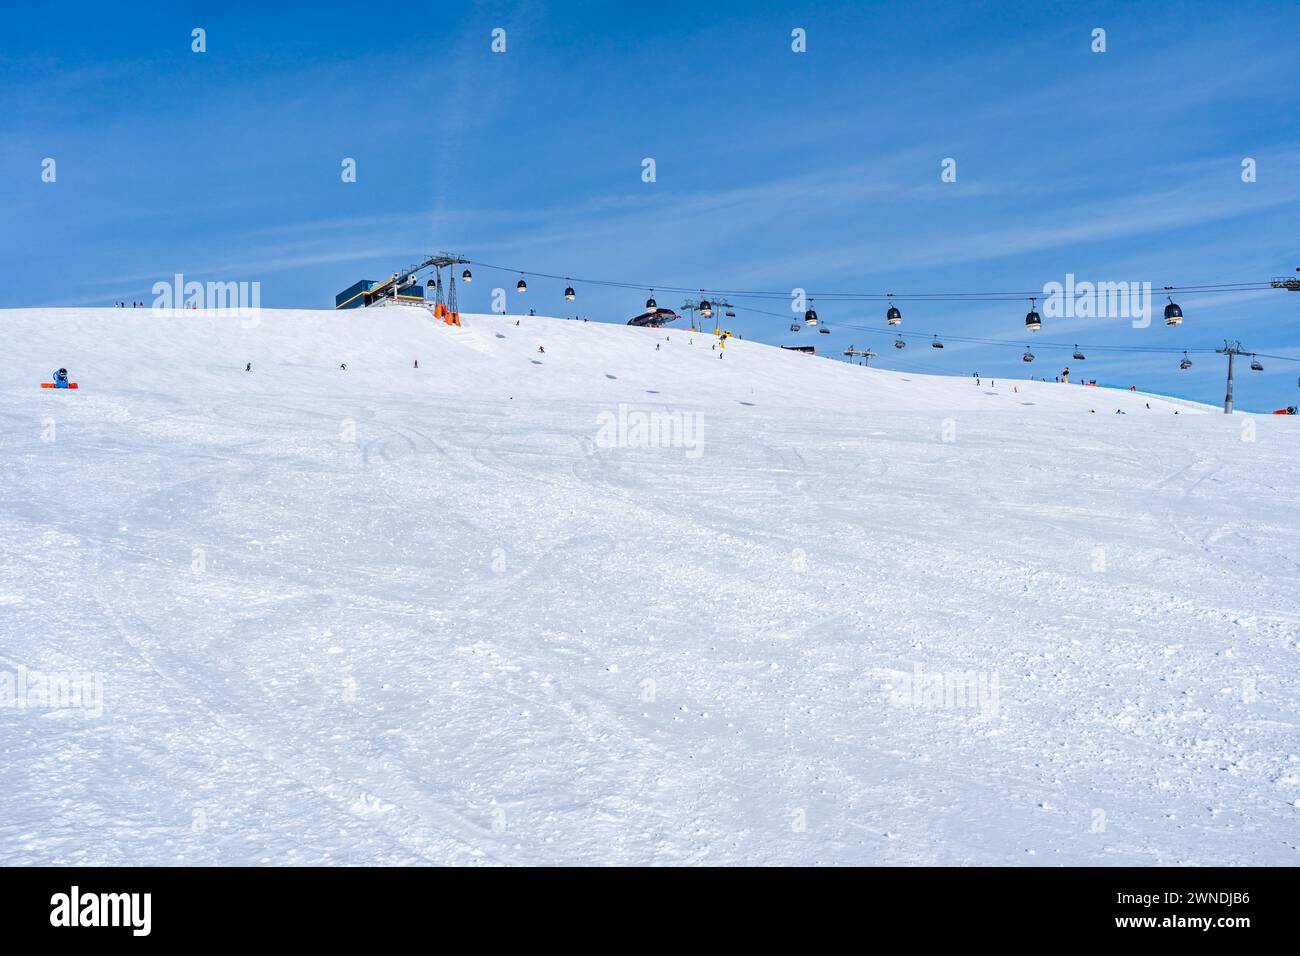 KRONPLATZ, ITALIE - 21 JANVIER 2024 : skieurs et snowboarders au sommet d'une montagne à la Kronplatz, une destination de sports d'hiver populaire en Italie. Banque D'Images